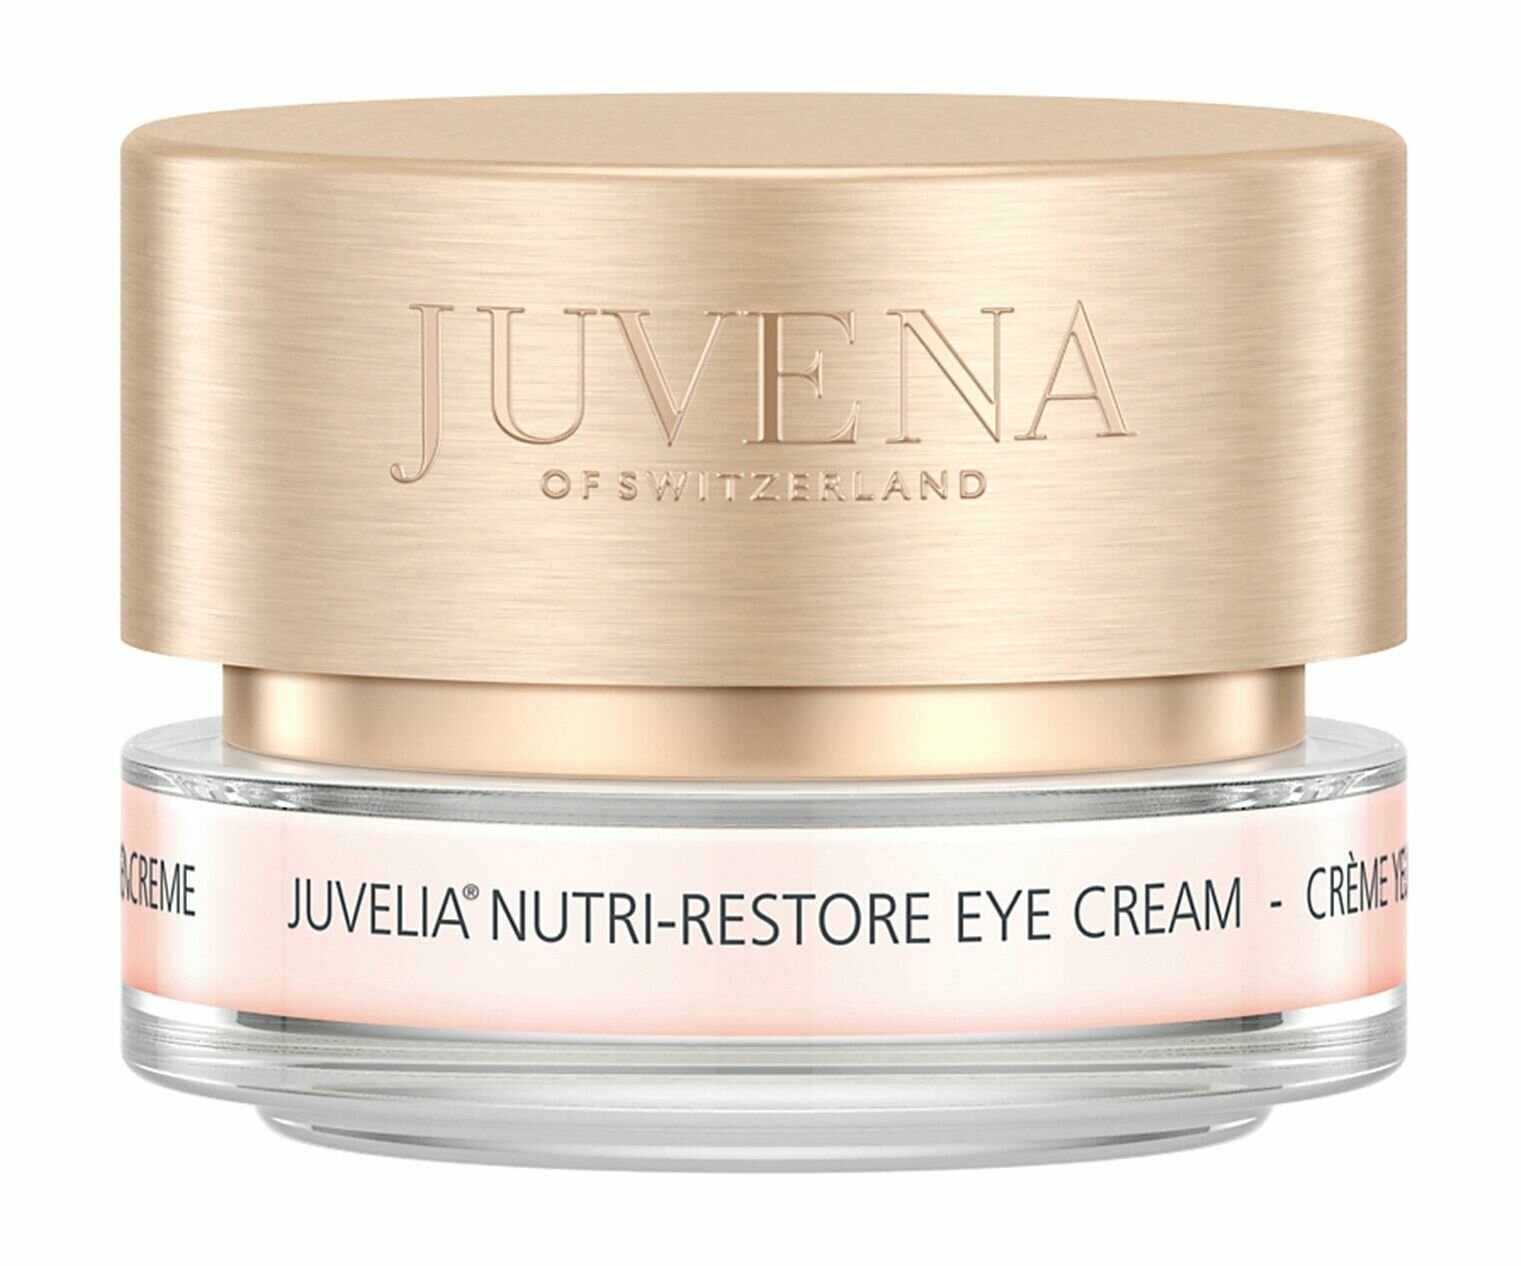 Питательный омолаживающий крем для кожи вокруг глаз Juvena Juvelia Nutri-Restore Eye Cream